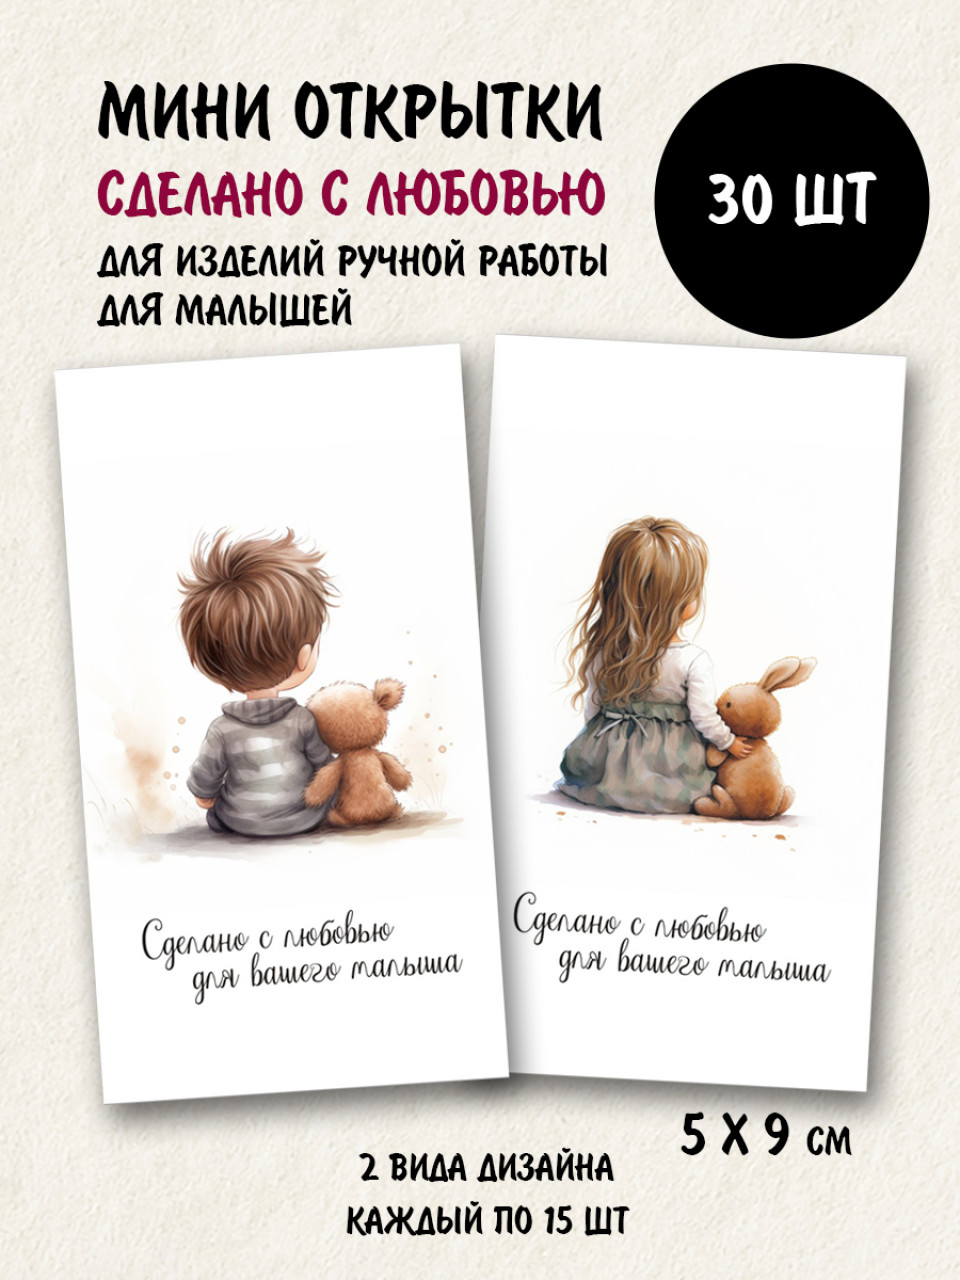 Мини открытки Сделано с любовью для вашего малыша, набор 30 шт 50х90 мм